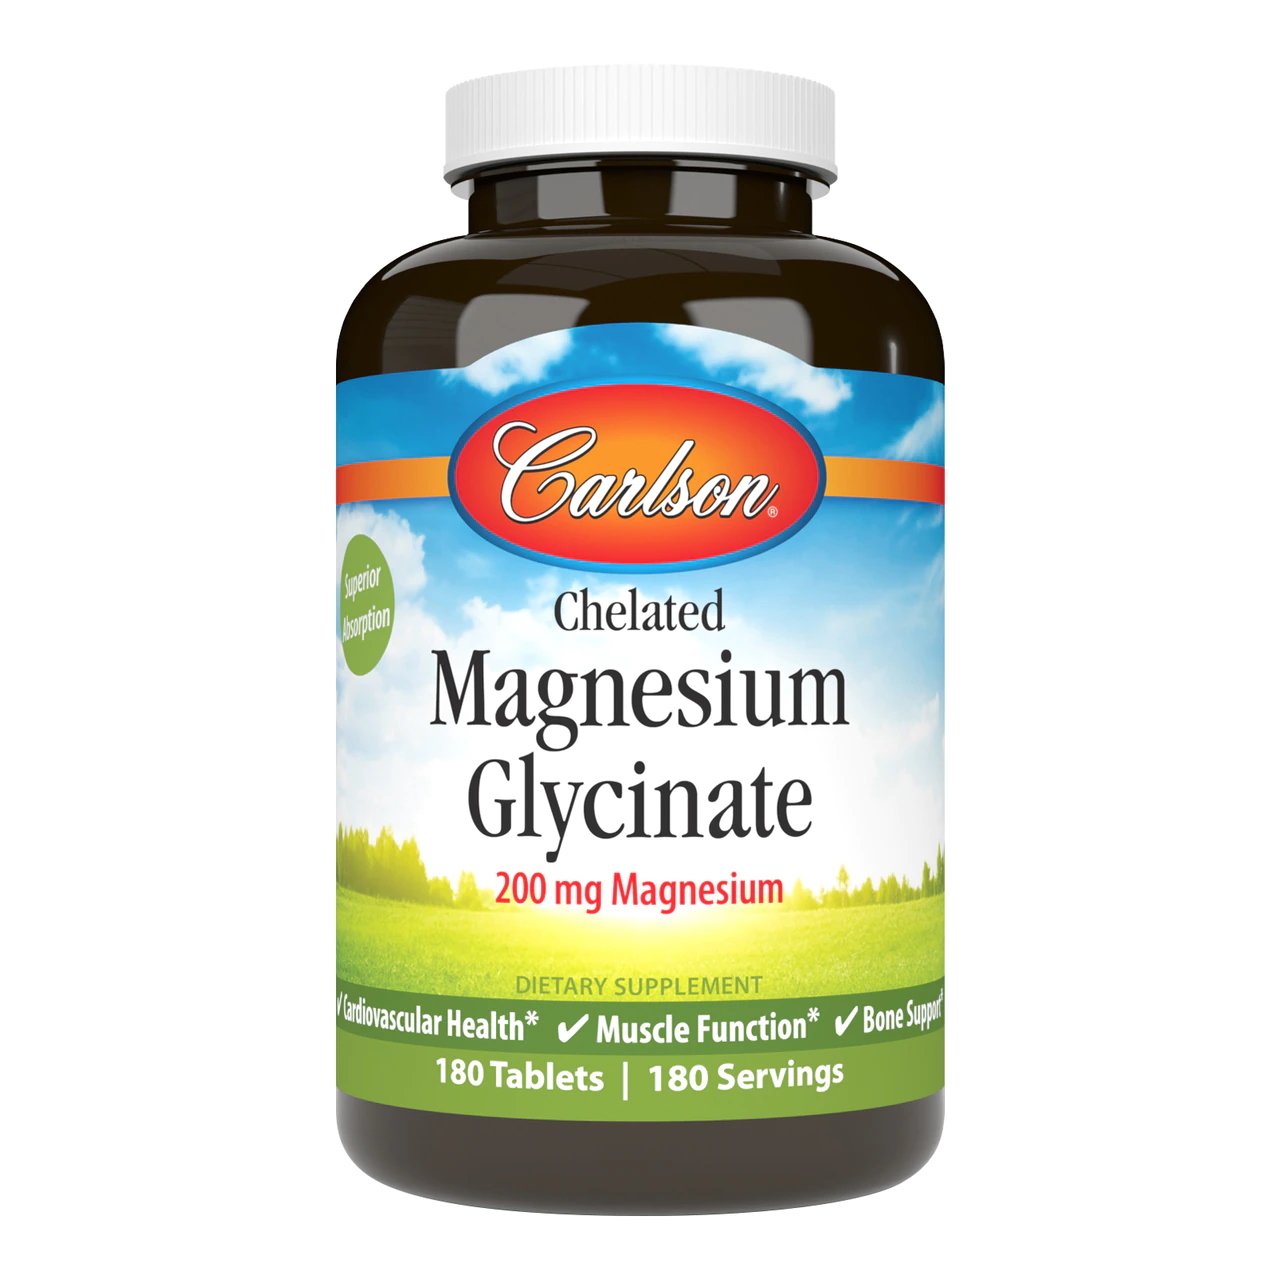 Витамины и минералы Carlson Labs Chelated Magnesium Glycinate, 180 таблеток,  мл, Carlson Labs. Витамины и минералы. Поддержание здоровья Укрепление иммунитета 